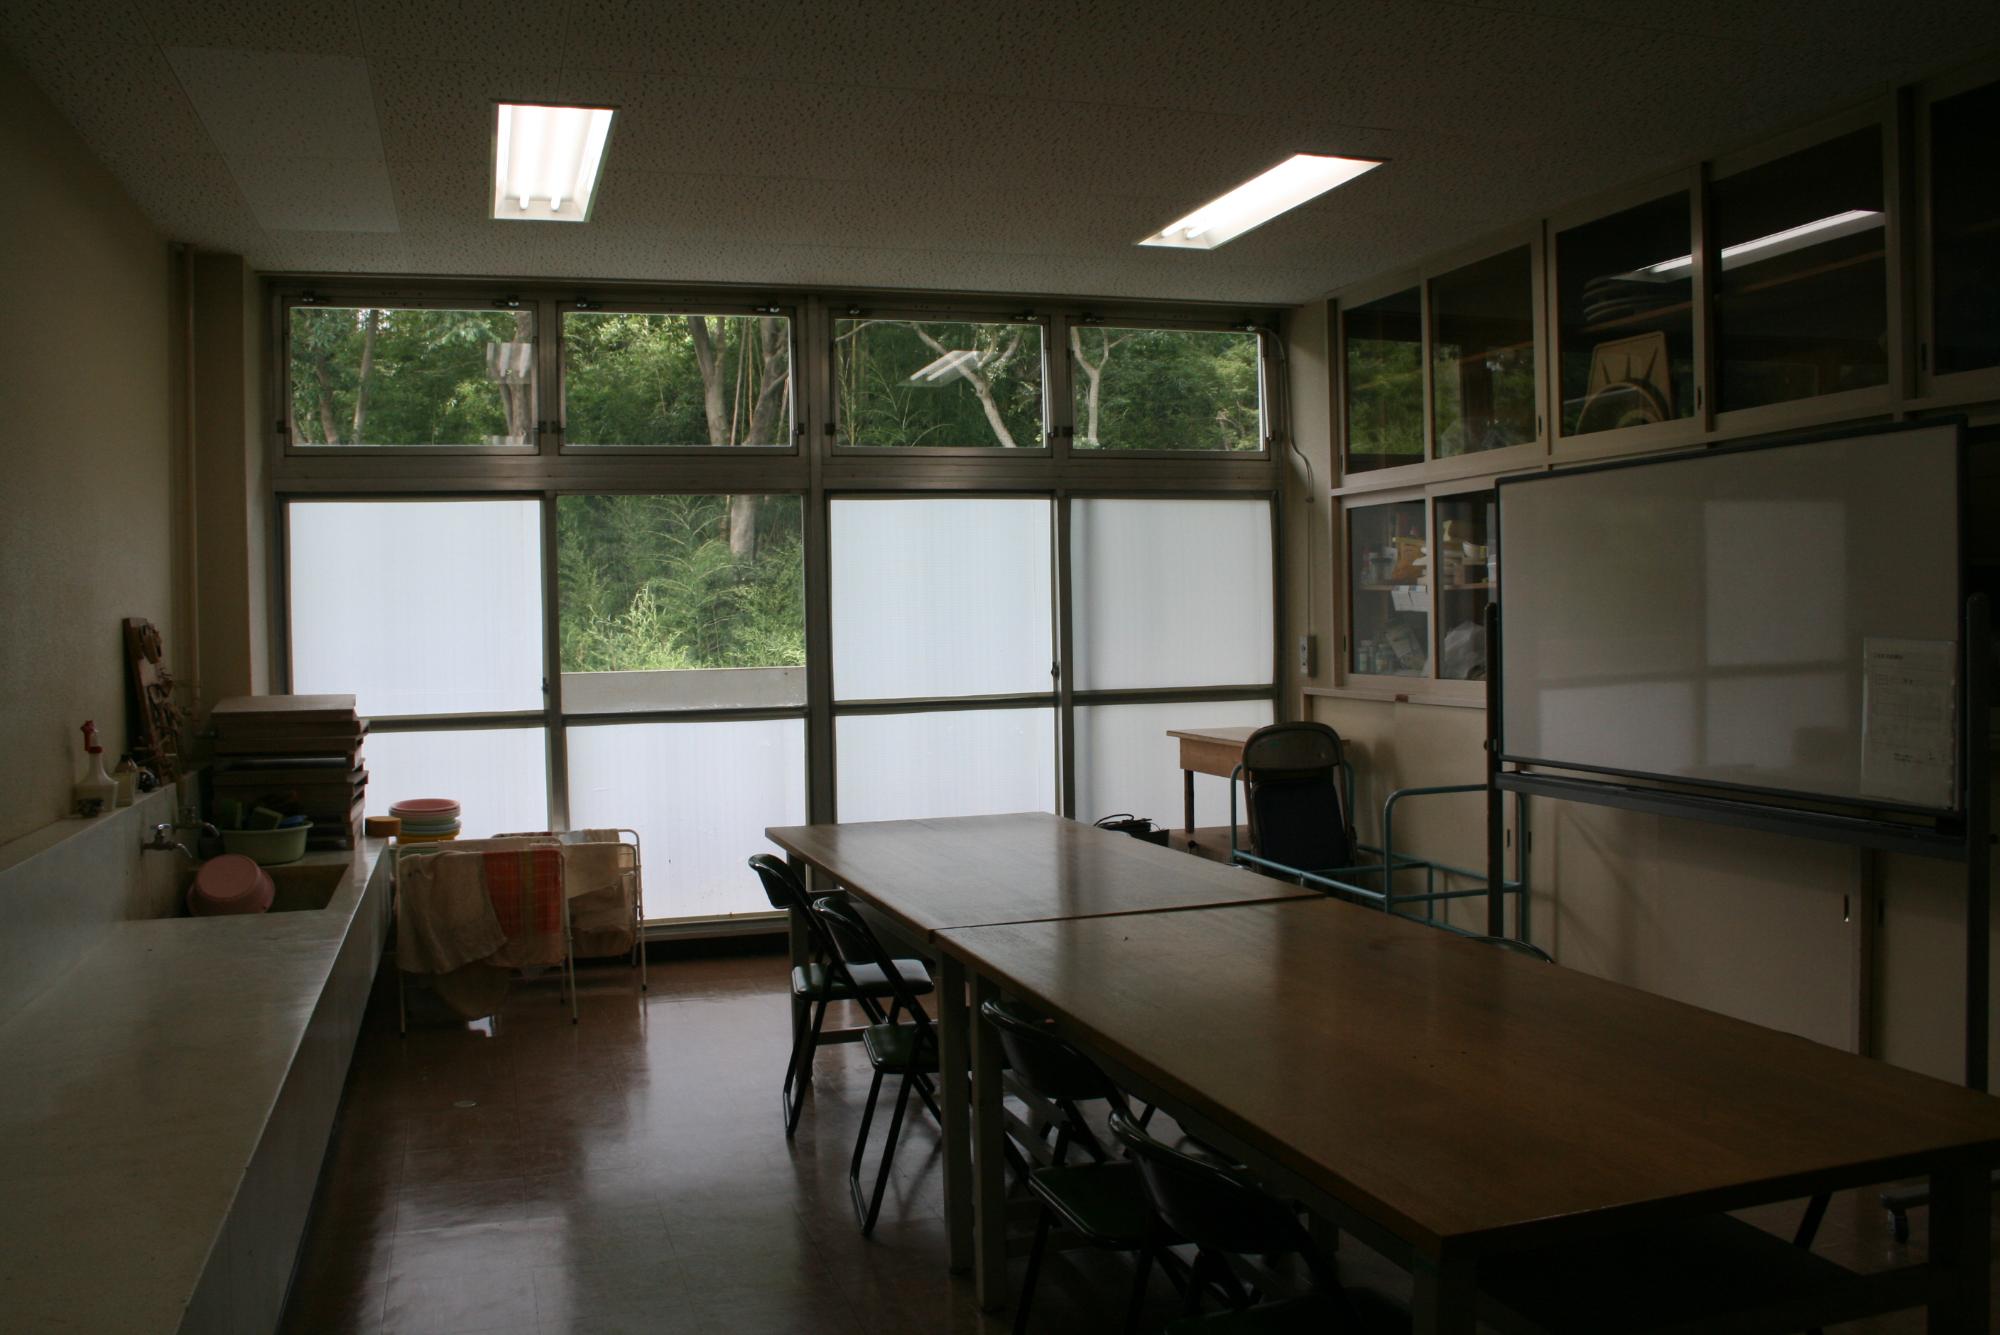 右側にホワイトボード、左側には洗い場があり、教室中央に作業台が縦に2台並び、パイプ椅子が設置されている工芸室の写真